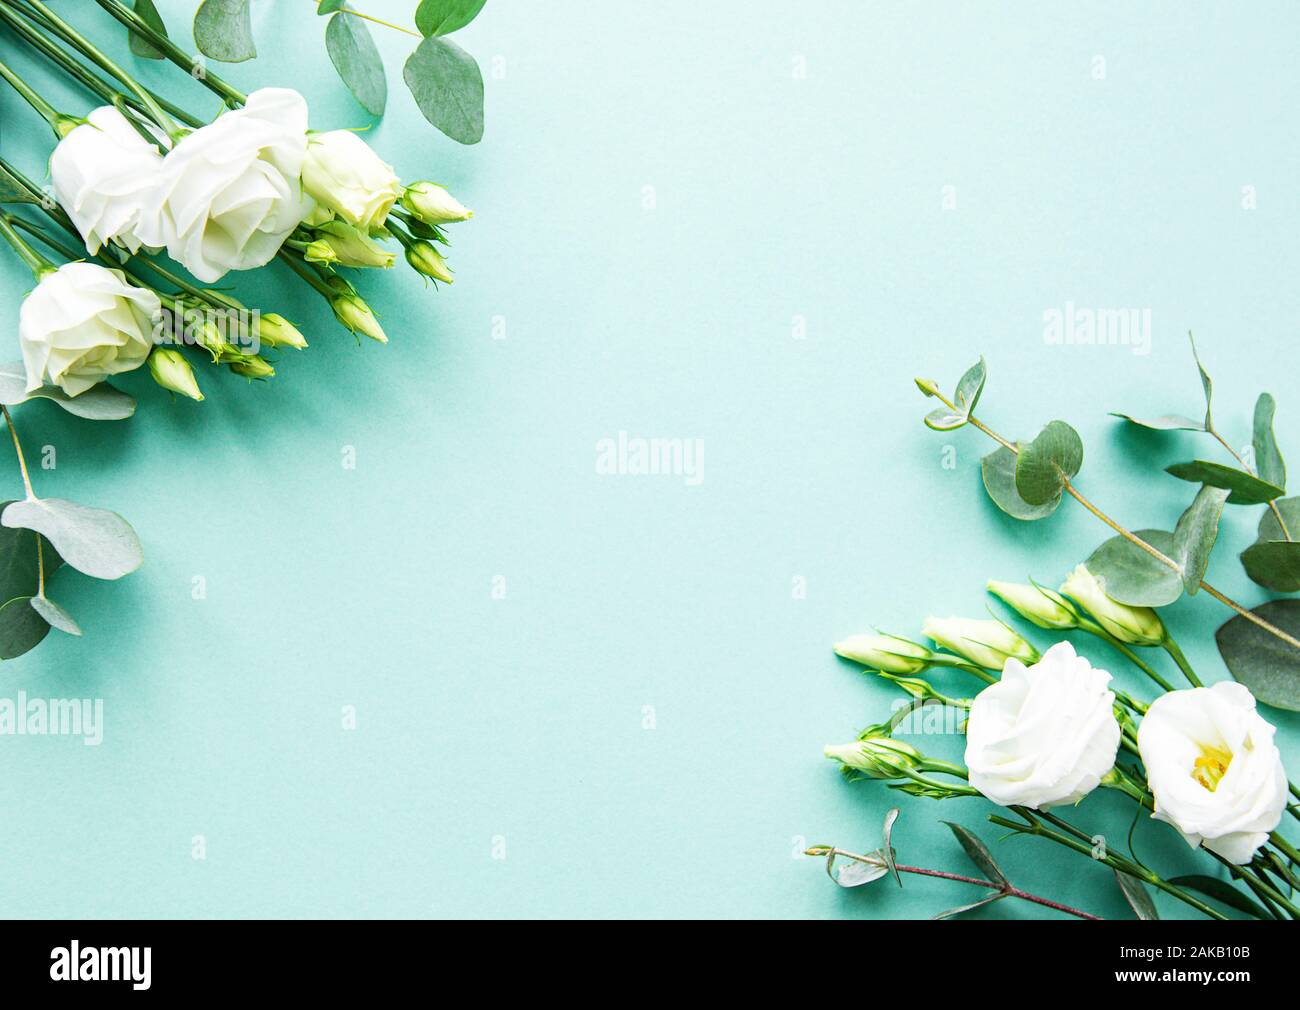 Với hoa cẩm chướng trắng và cây bạc hà trên nền xanh nhạt, thiệp cưới này thật tuyệt vời phải không nào? Họa tiết cực kỳ tinh tế và tươi sáng sẽ mang đến cho bạn một không gian mới mẻ, tràn đầy sức sống. Hãy chiêm ngưỡng hình ảnh đẹp ngất ngây của thiệp cưới này bạn nhé! 